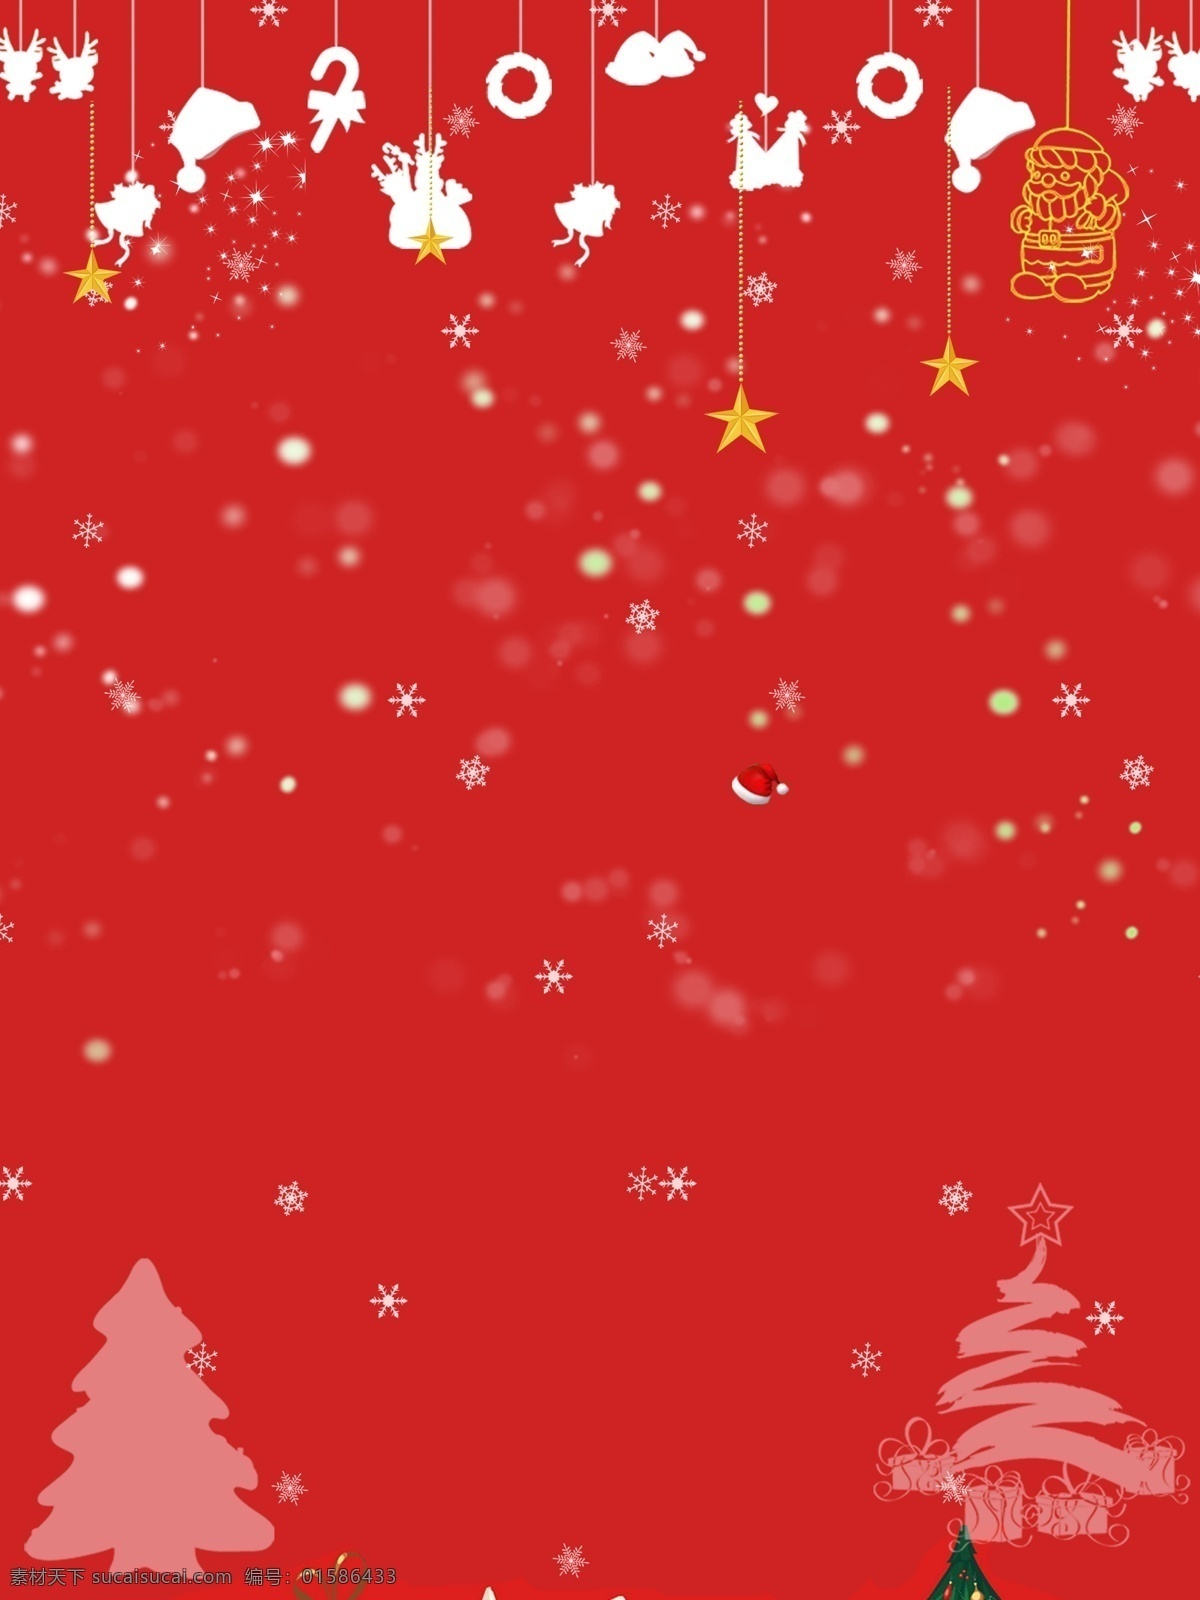 红色 圣诞节 主题 促销 背景 圣诞素材 冬季背景 背景设计 节日背景 圣诞礼物 圣诞活动 圣诞图 新年背景 圣诞节dm单